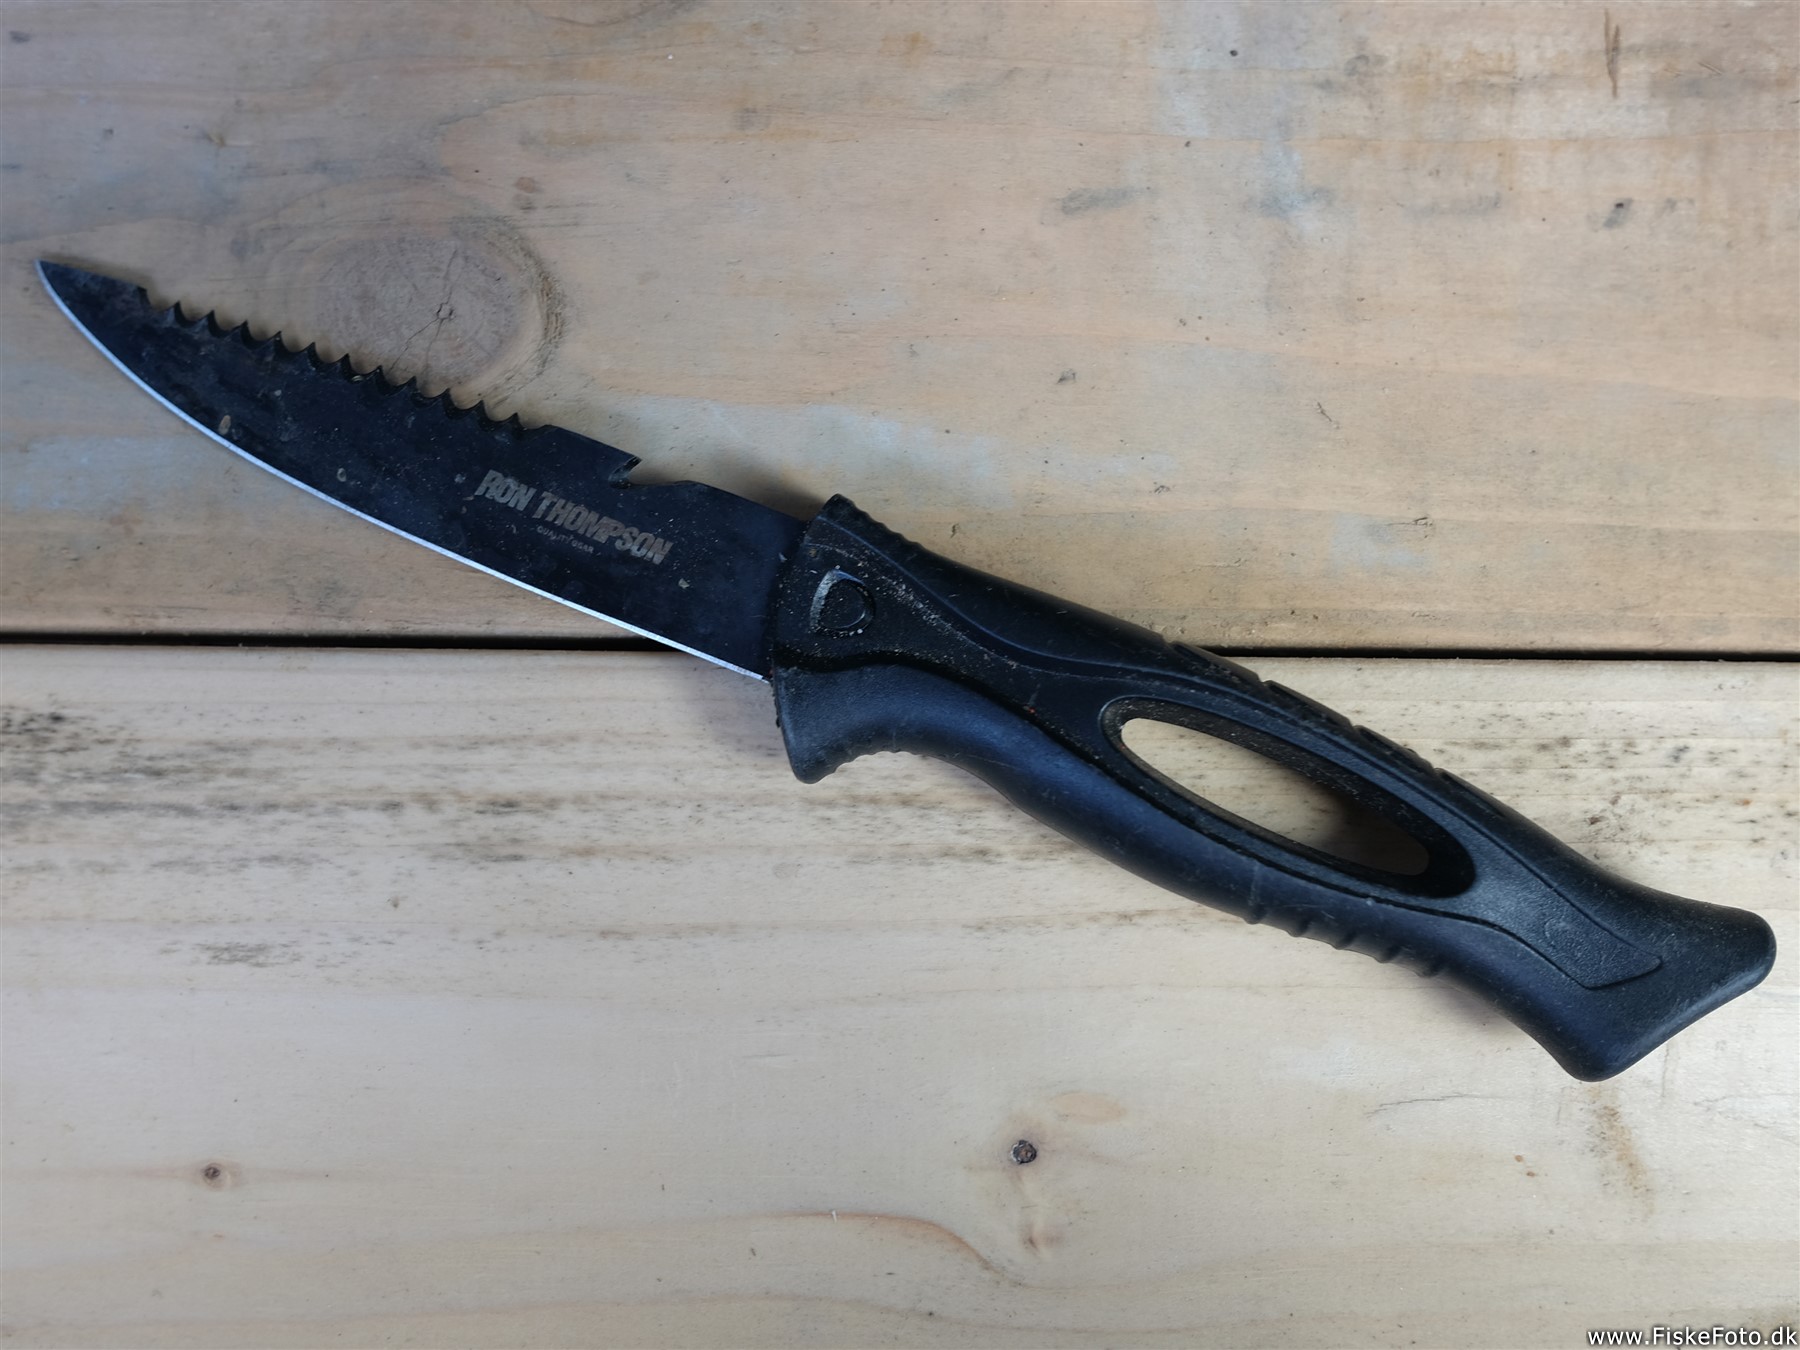 En fiskedolk, fiskekniv eller agnkniv. (fiskedolk, rensning filetering)